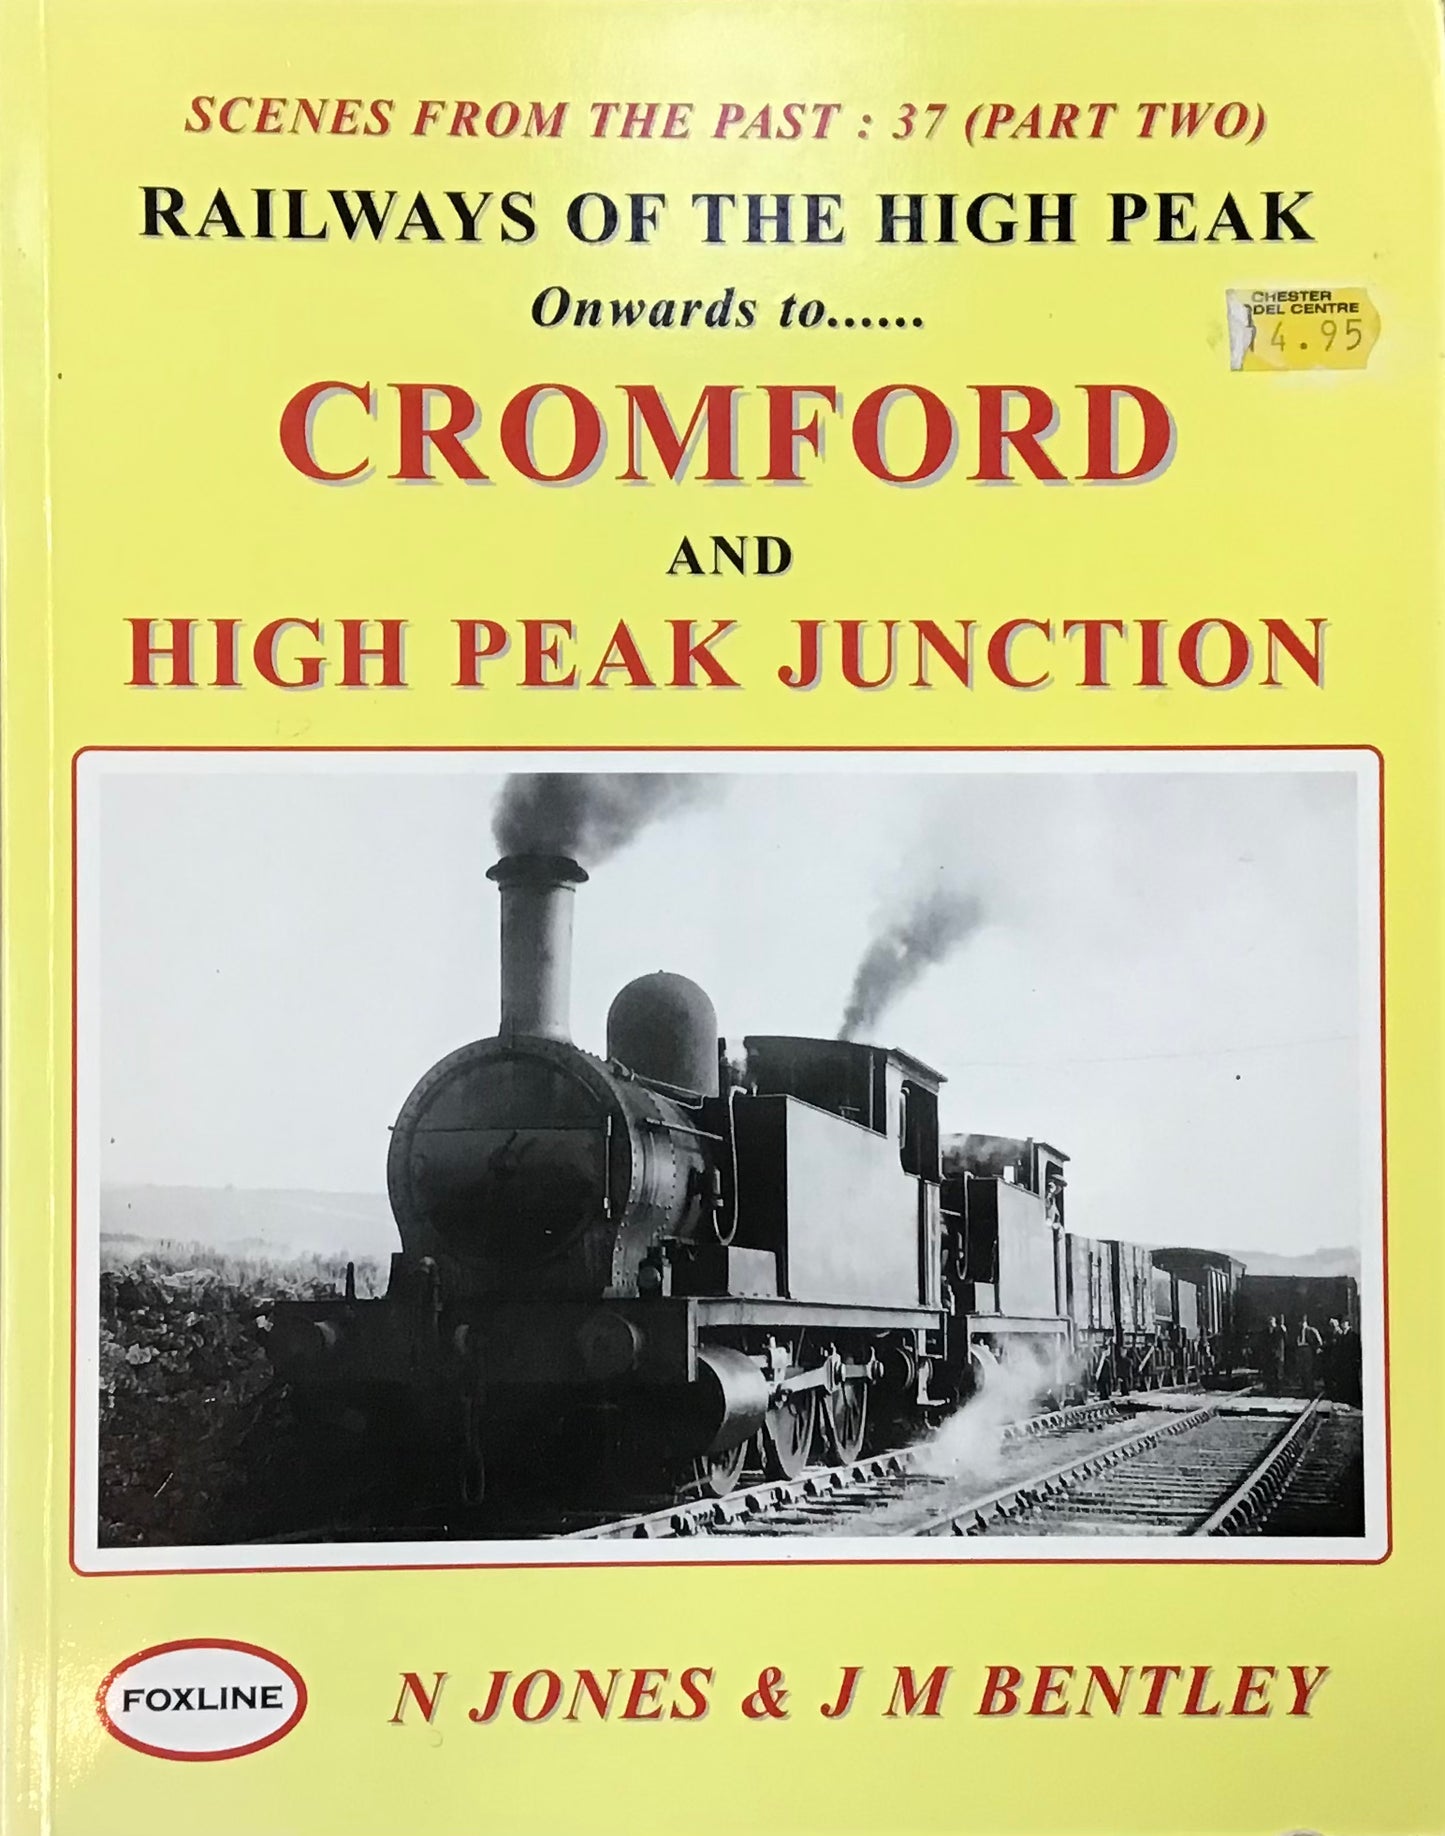 Railways of the High Peak Cromford and High Peak Junction by N Jones & J M Bentley - Chester Model Centre